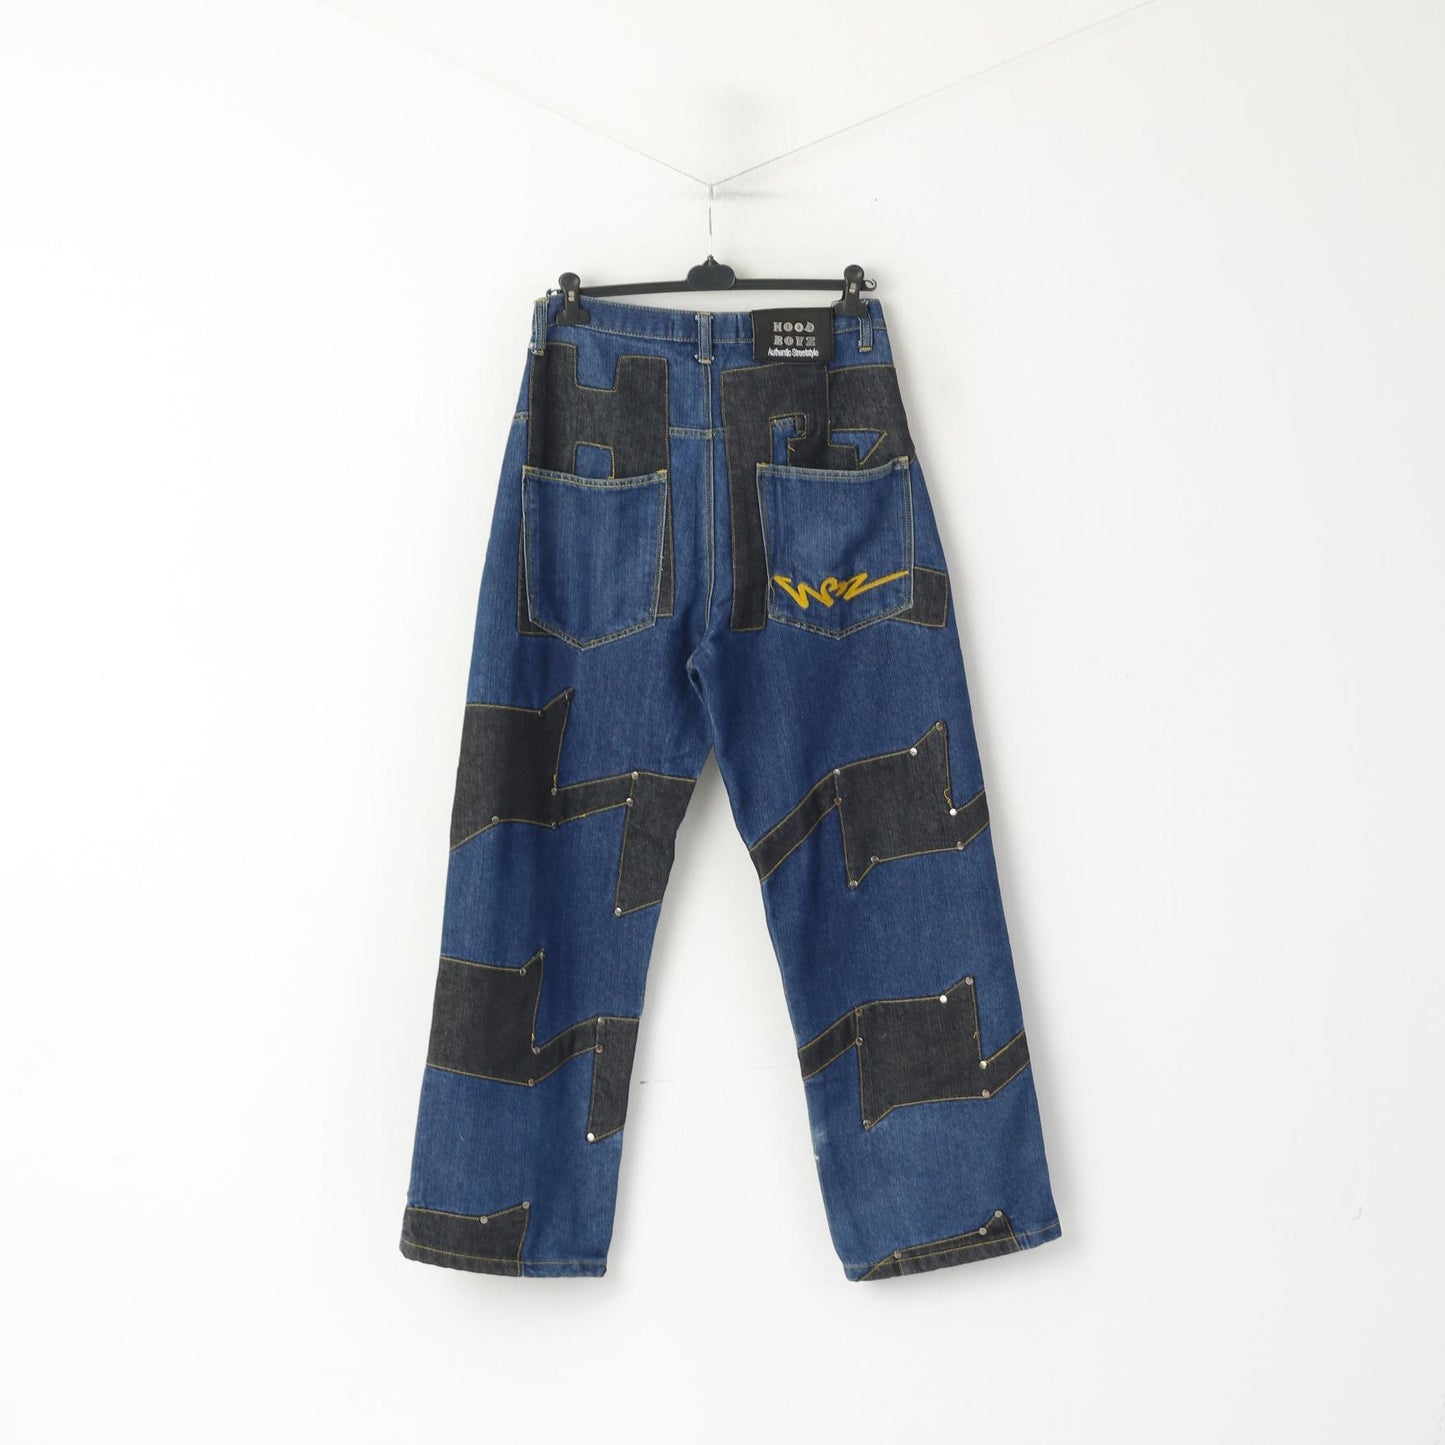 Hoodboyz Men 32 Jeans Pantalon Bleu Marine Denim Hip-Hop Streetstyle Western Pantalon